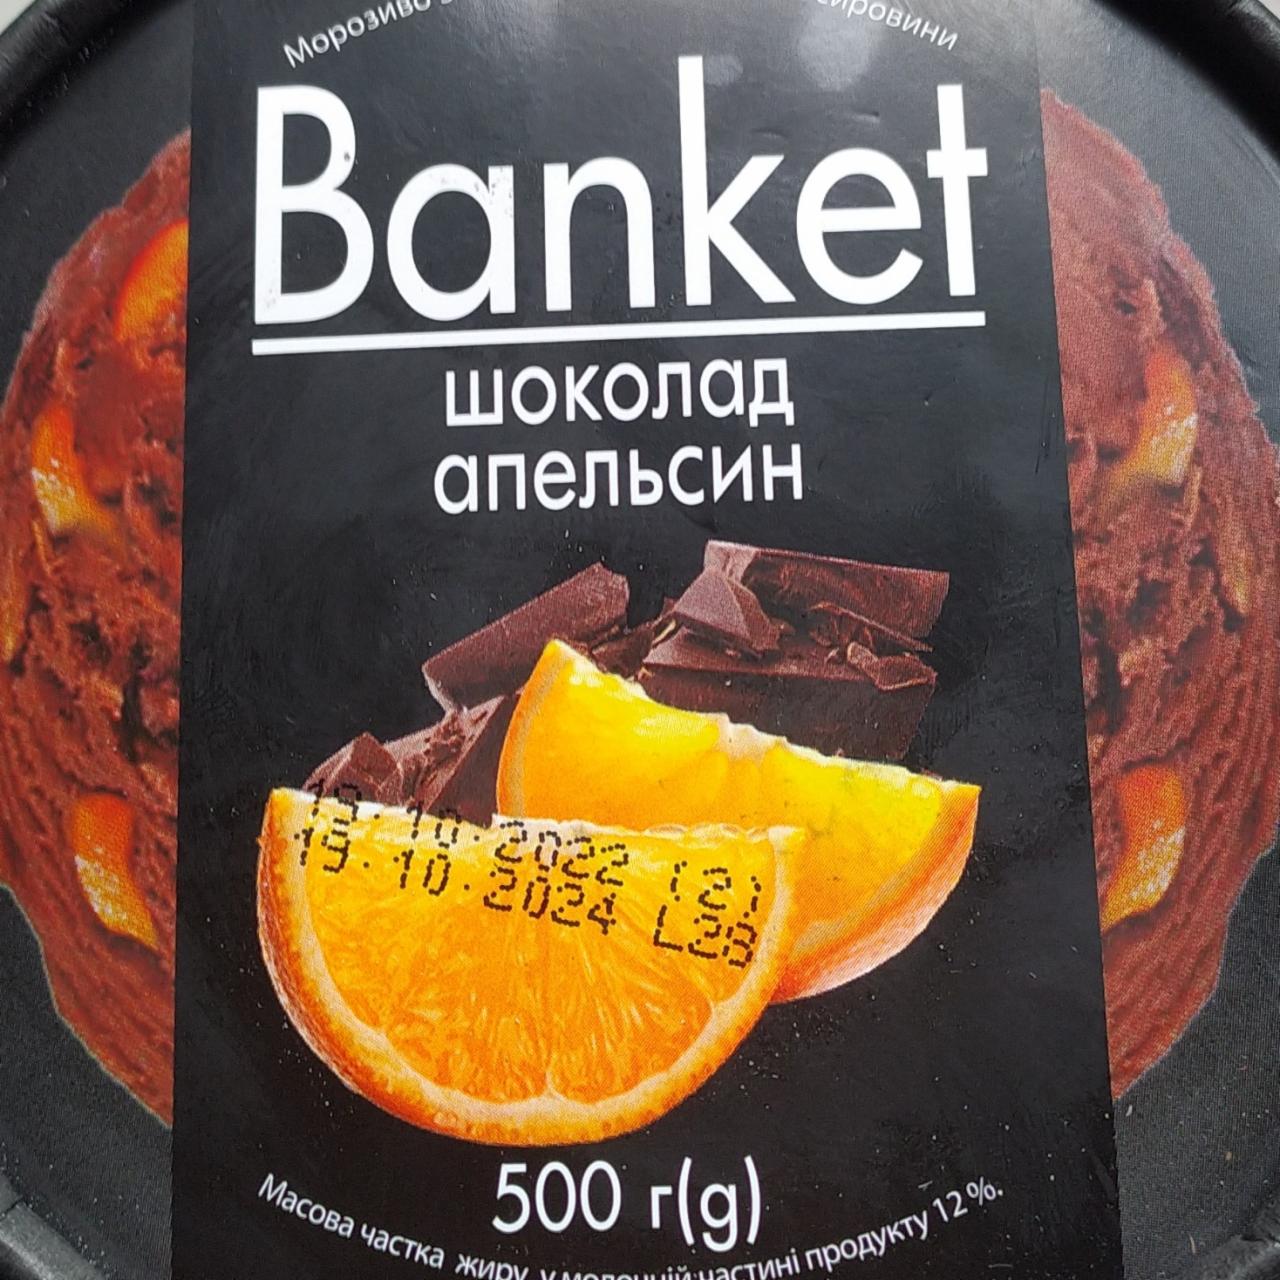 Фото - Мороженное шоколад апельсин Banket